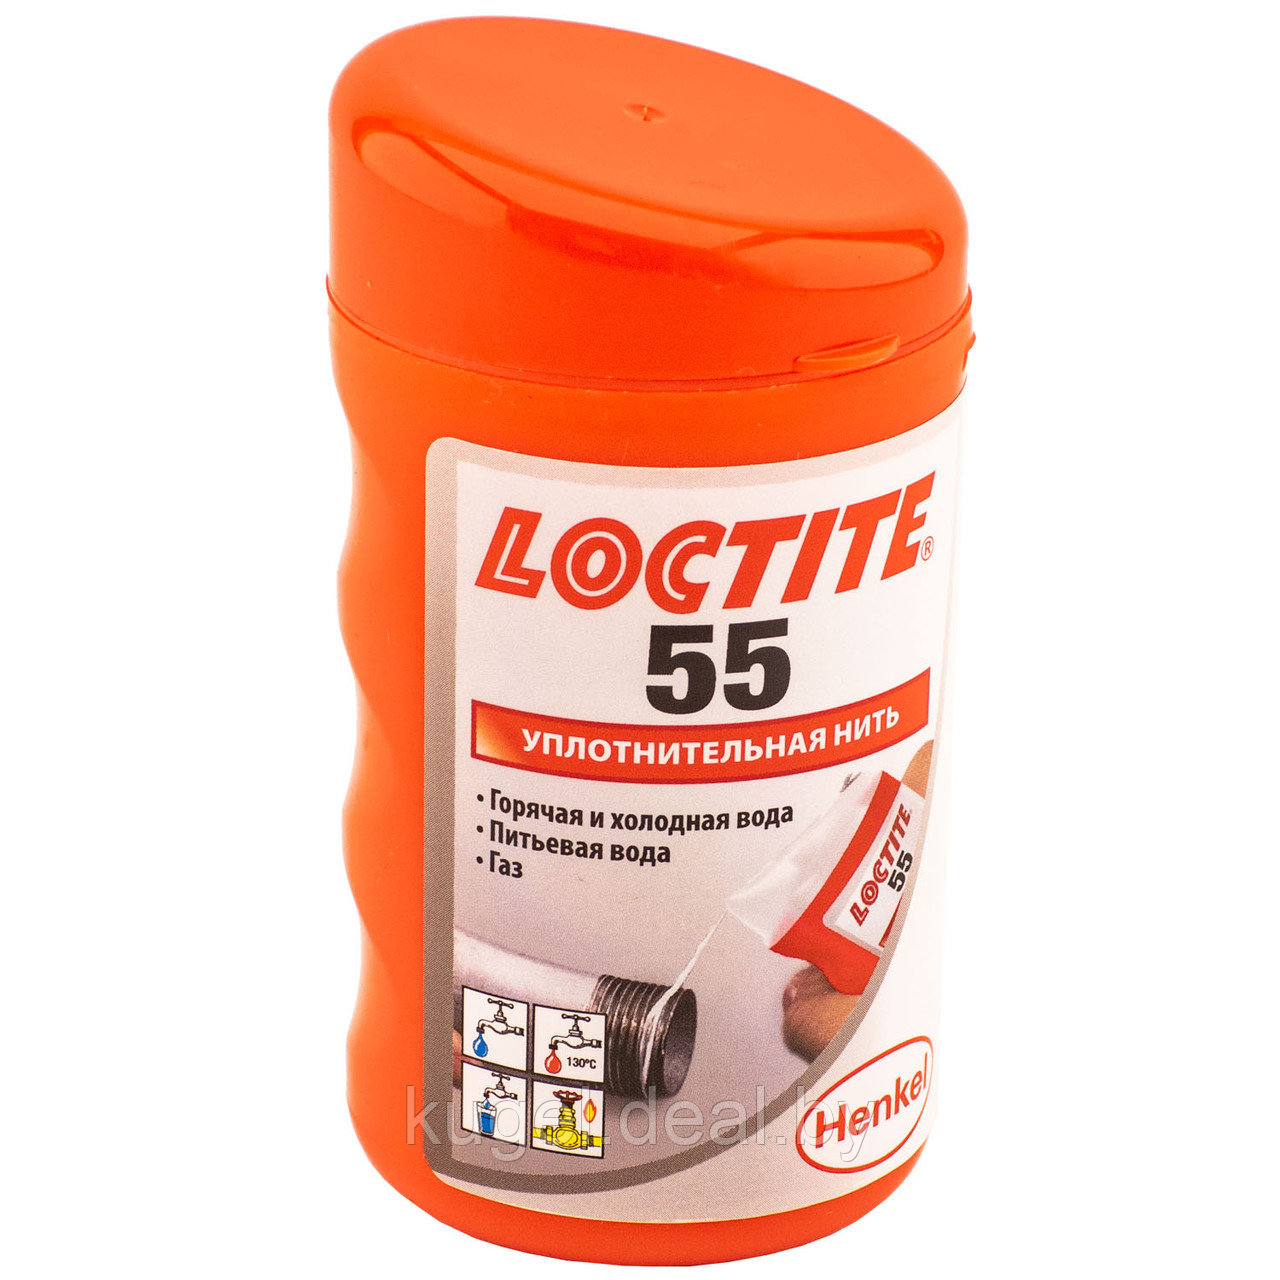 Герметизирующая нить для газа и питьевой воды Локтайт, 55 48x160M, Loctite